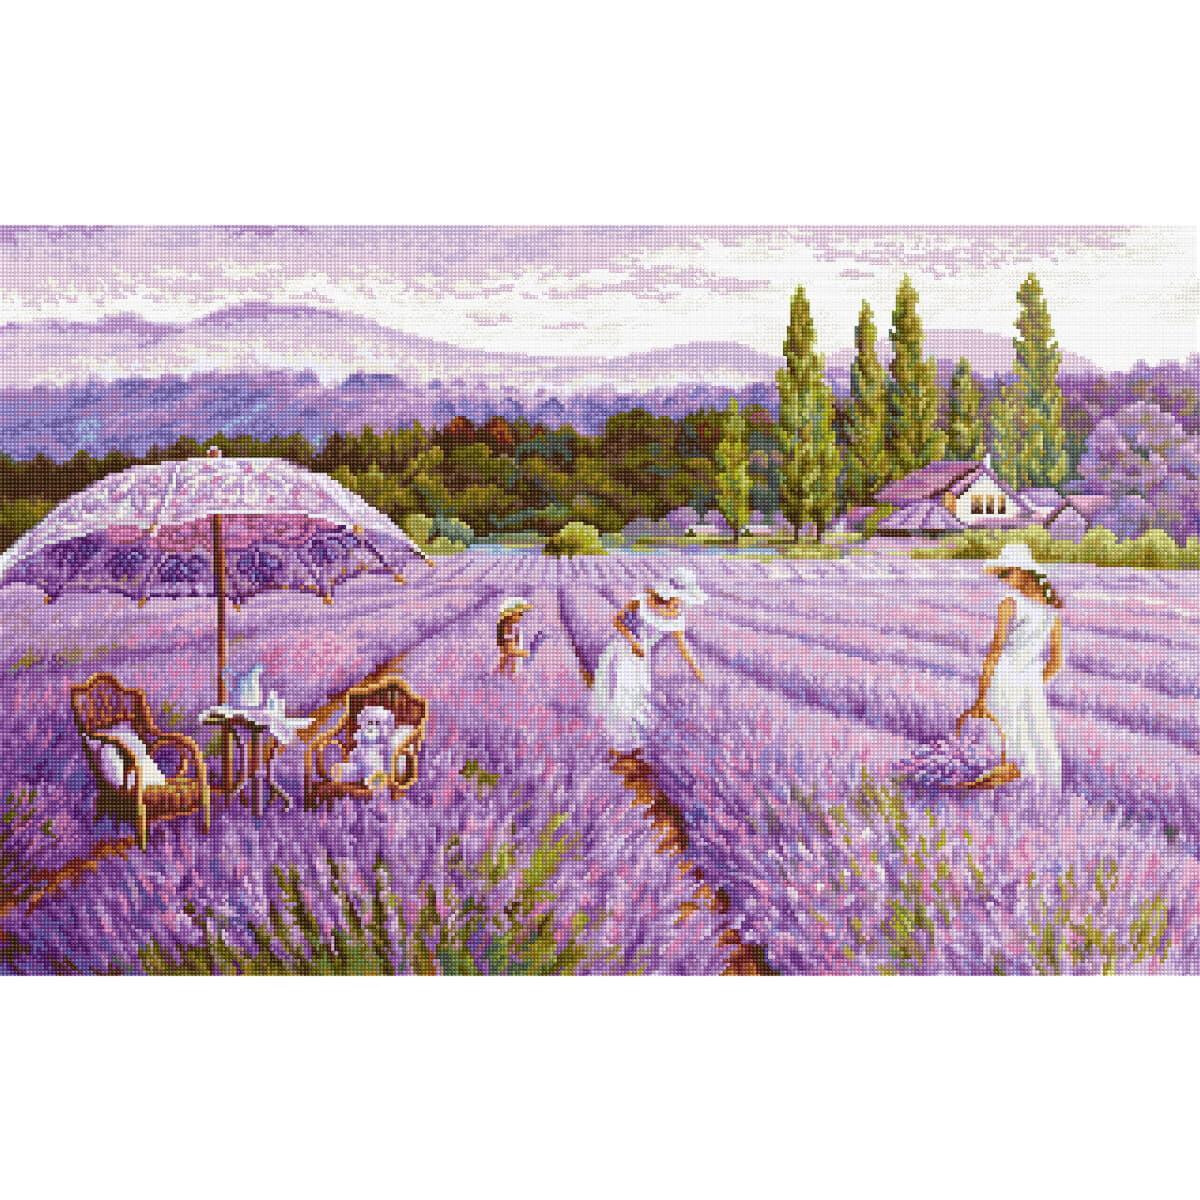 Een schilderachtig lavendelveld strekt zich uit onder een...